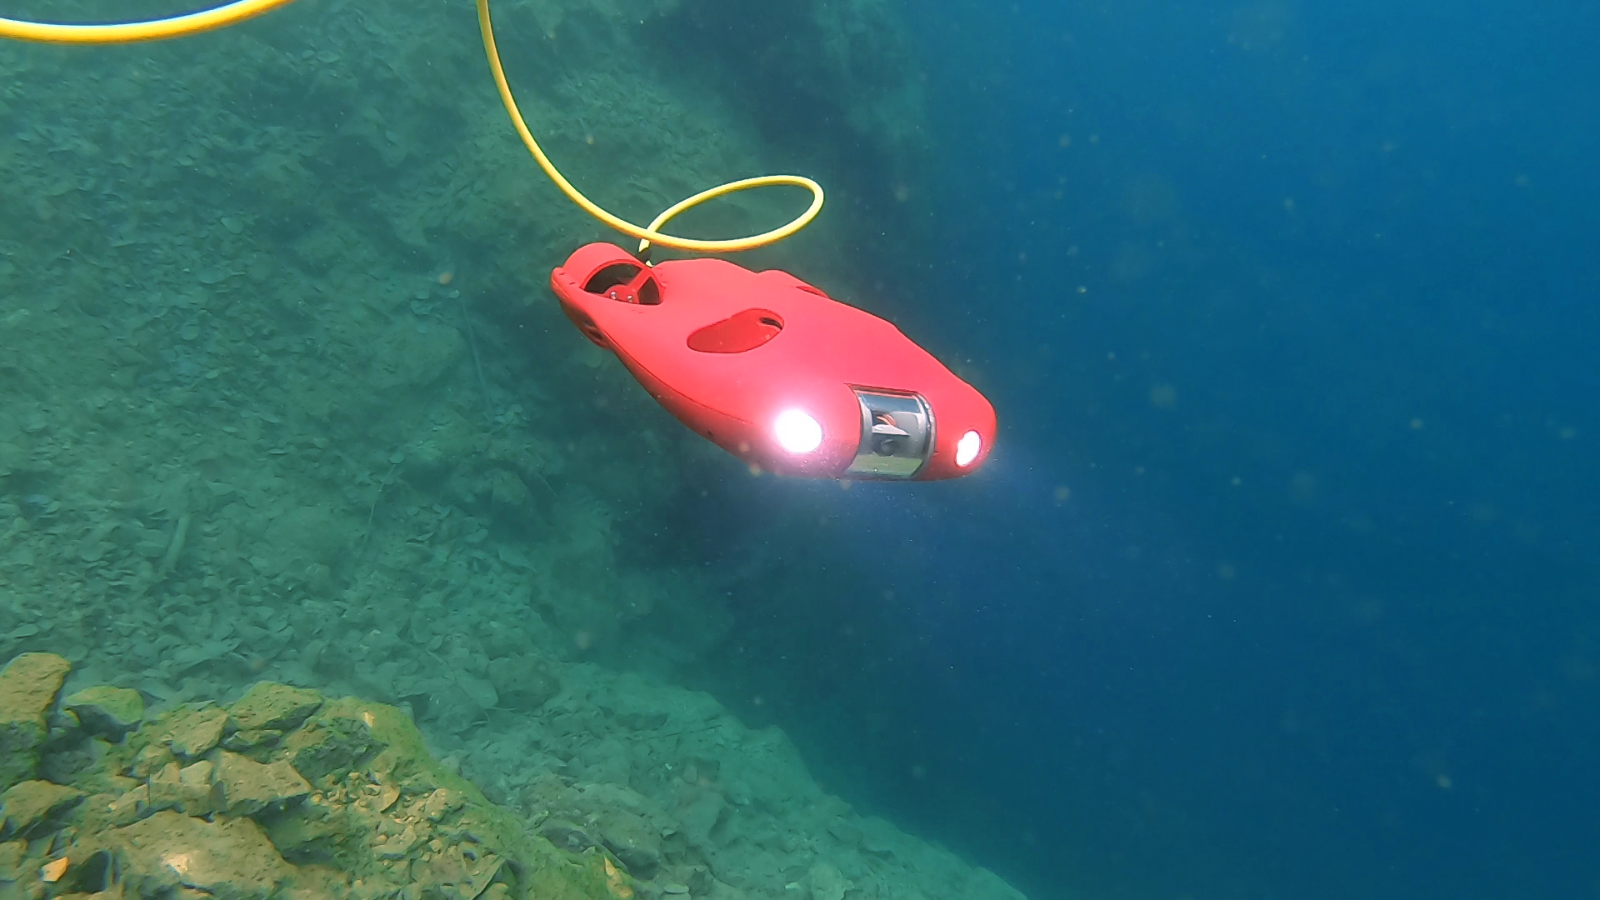 CPS 5 Underwater Drone Deliveries Start March 2021 | Underwater Drone Forum